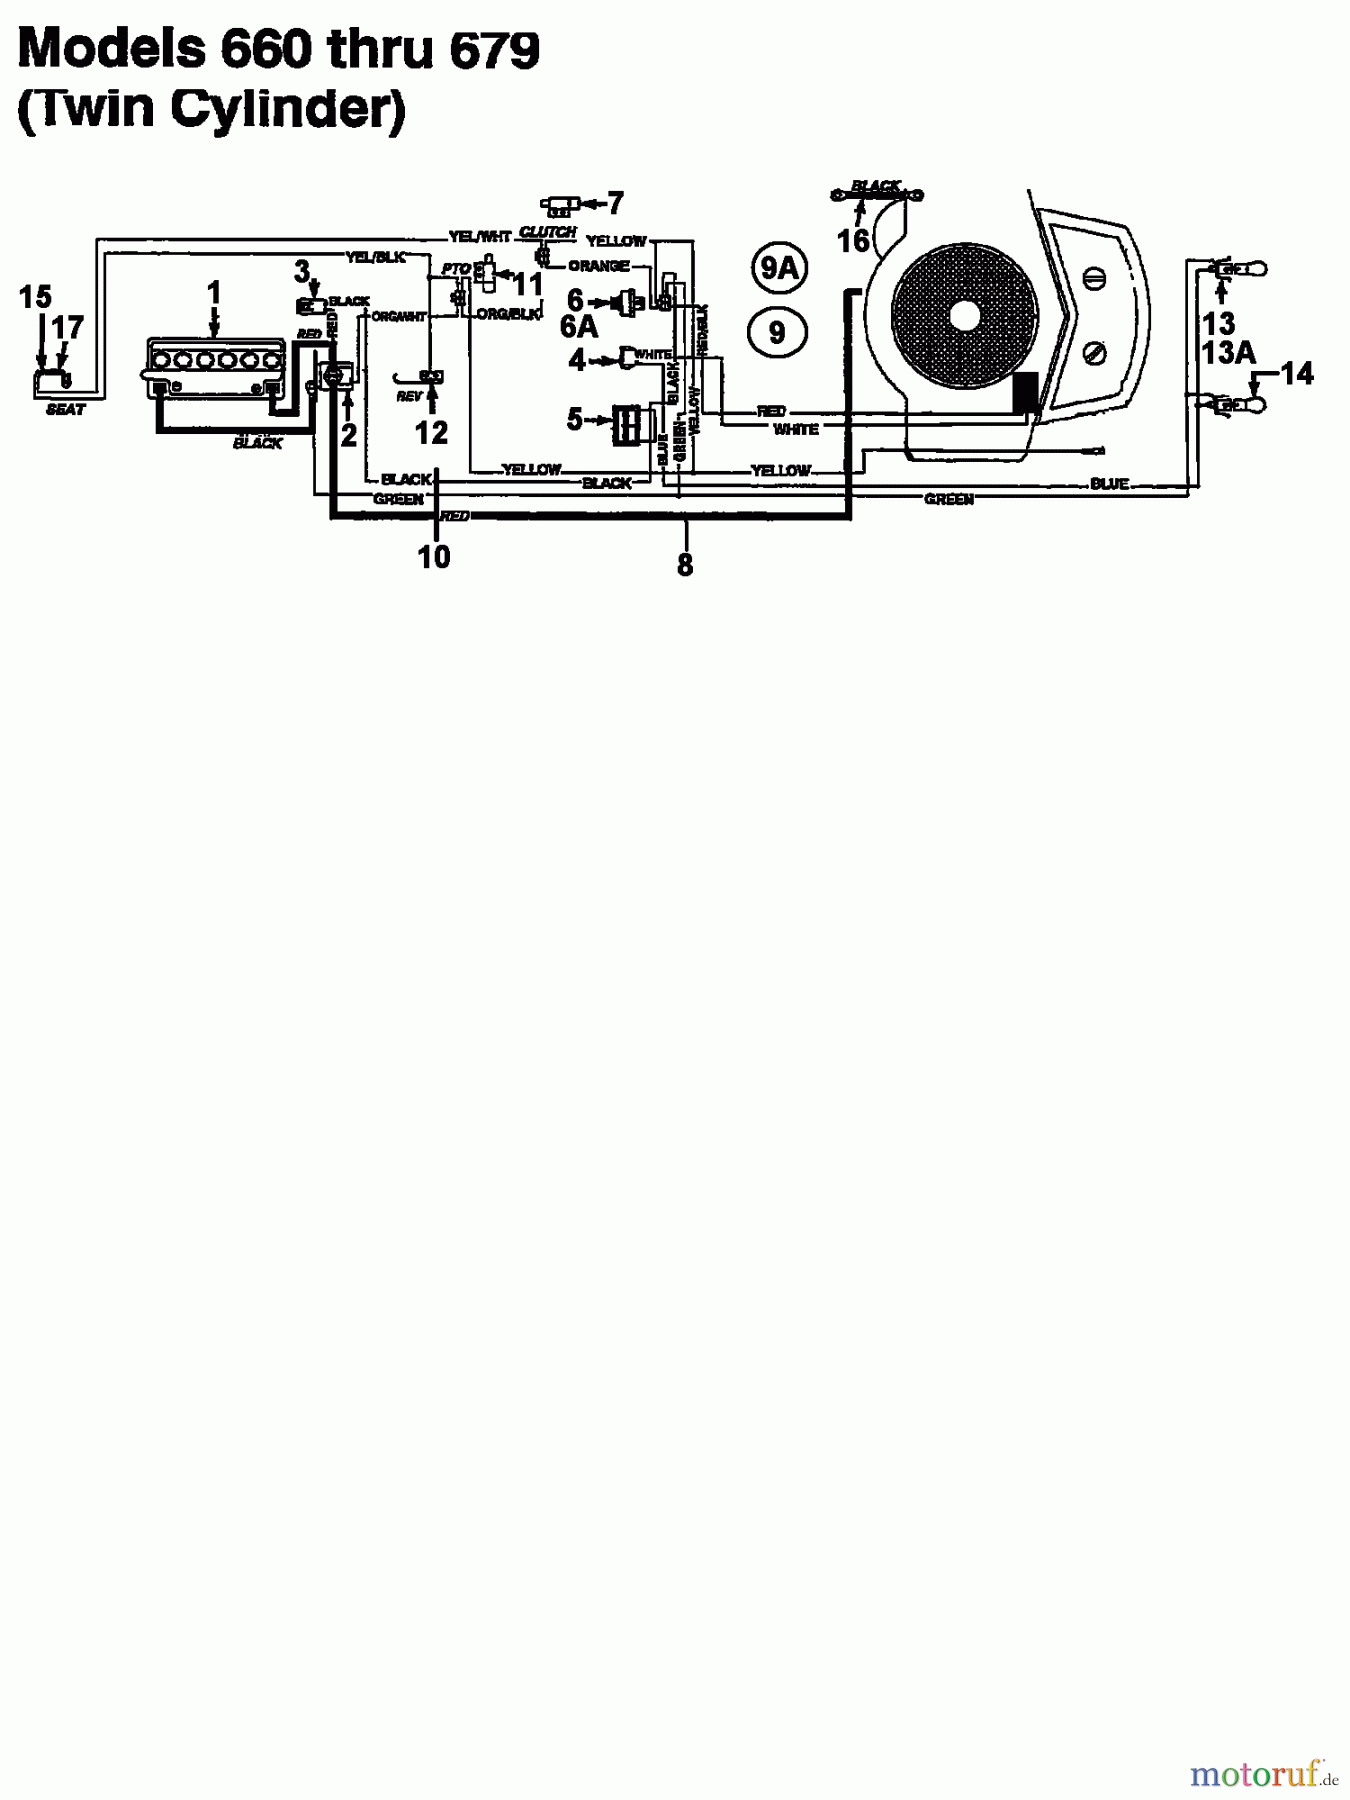  Bauhaus Tracteurs de pelouse Funrunner 133I679F646  (1993) Plan électrique 2 cylindre